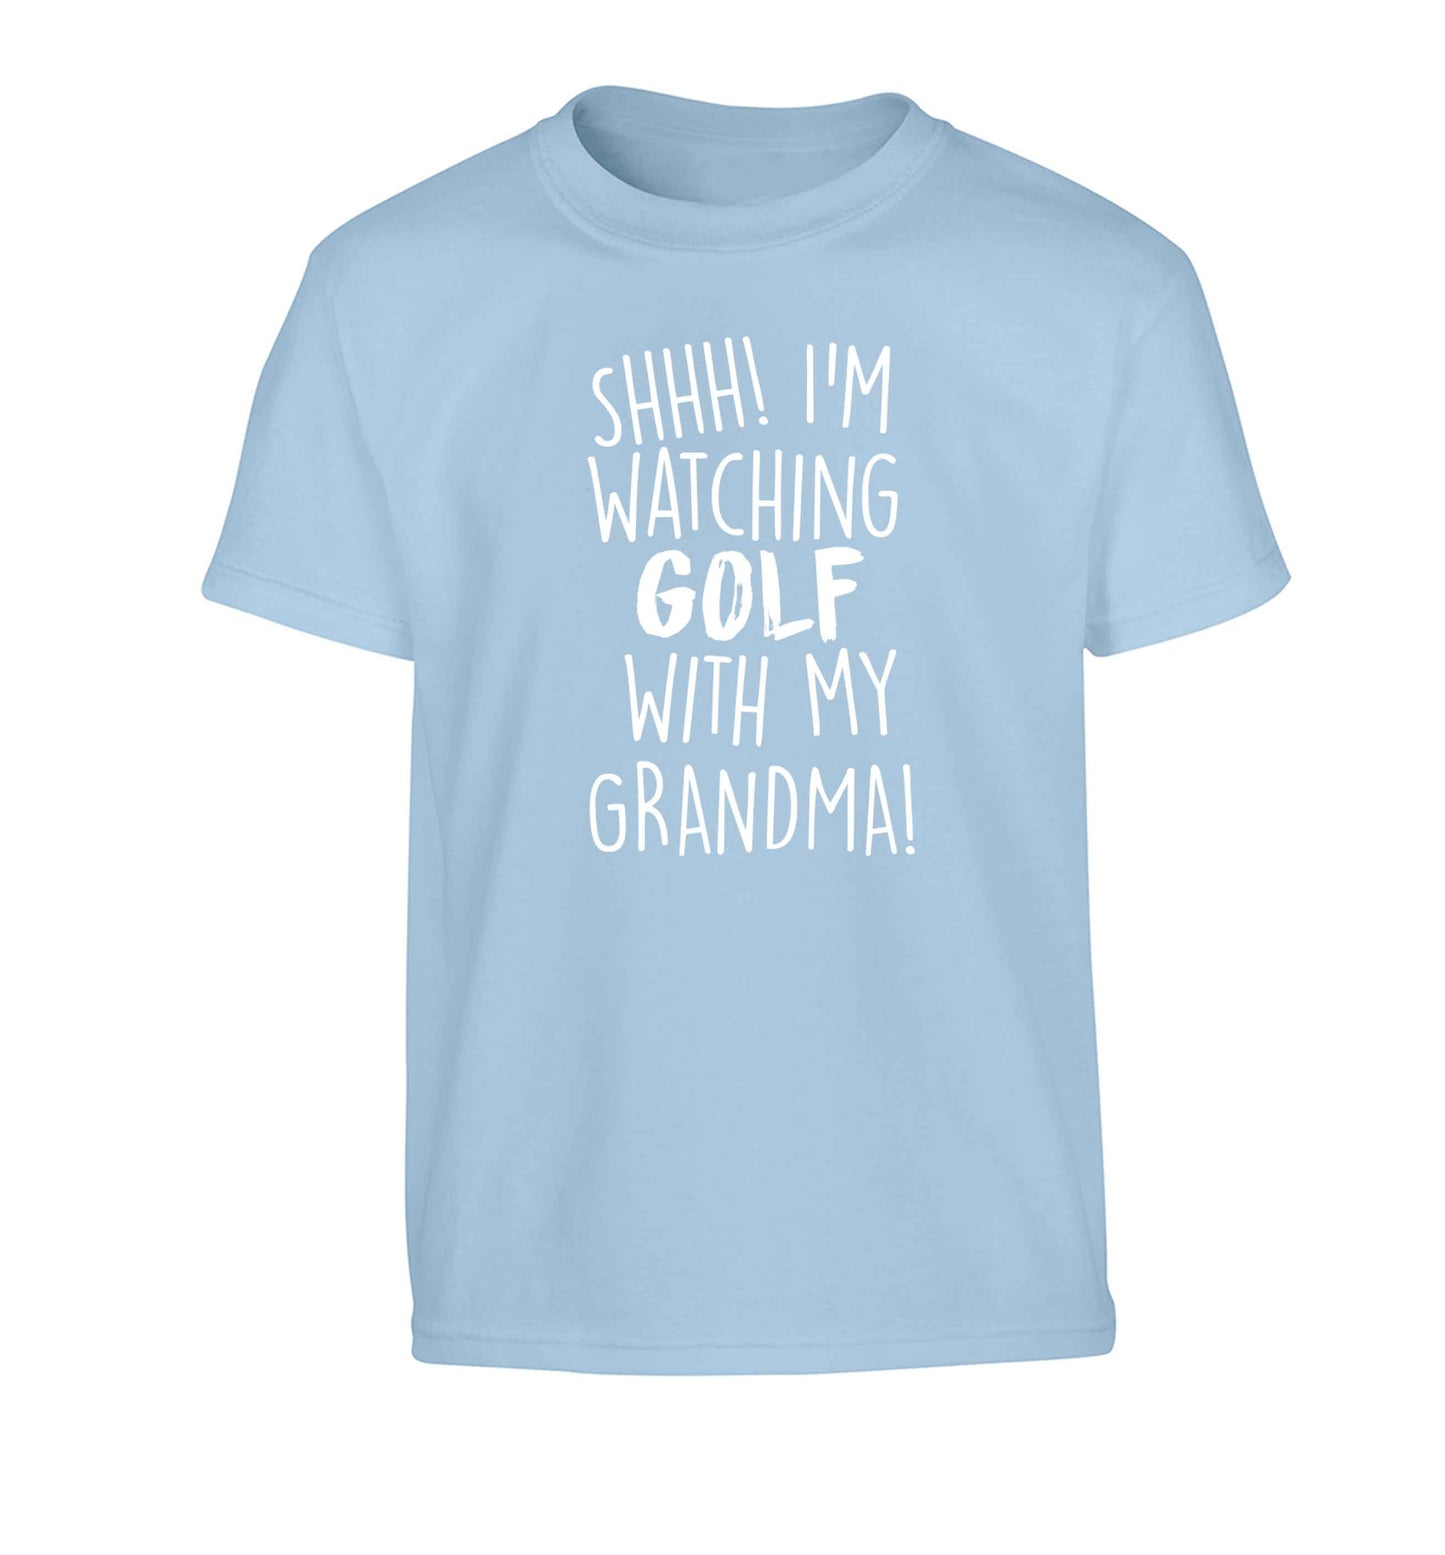 Shh I'm watching golf with my grandma Children's light blue Tshirt 12-13 Years